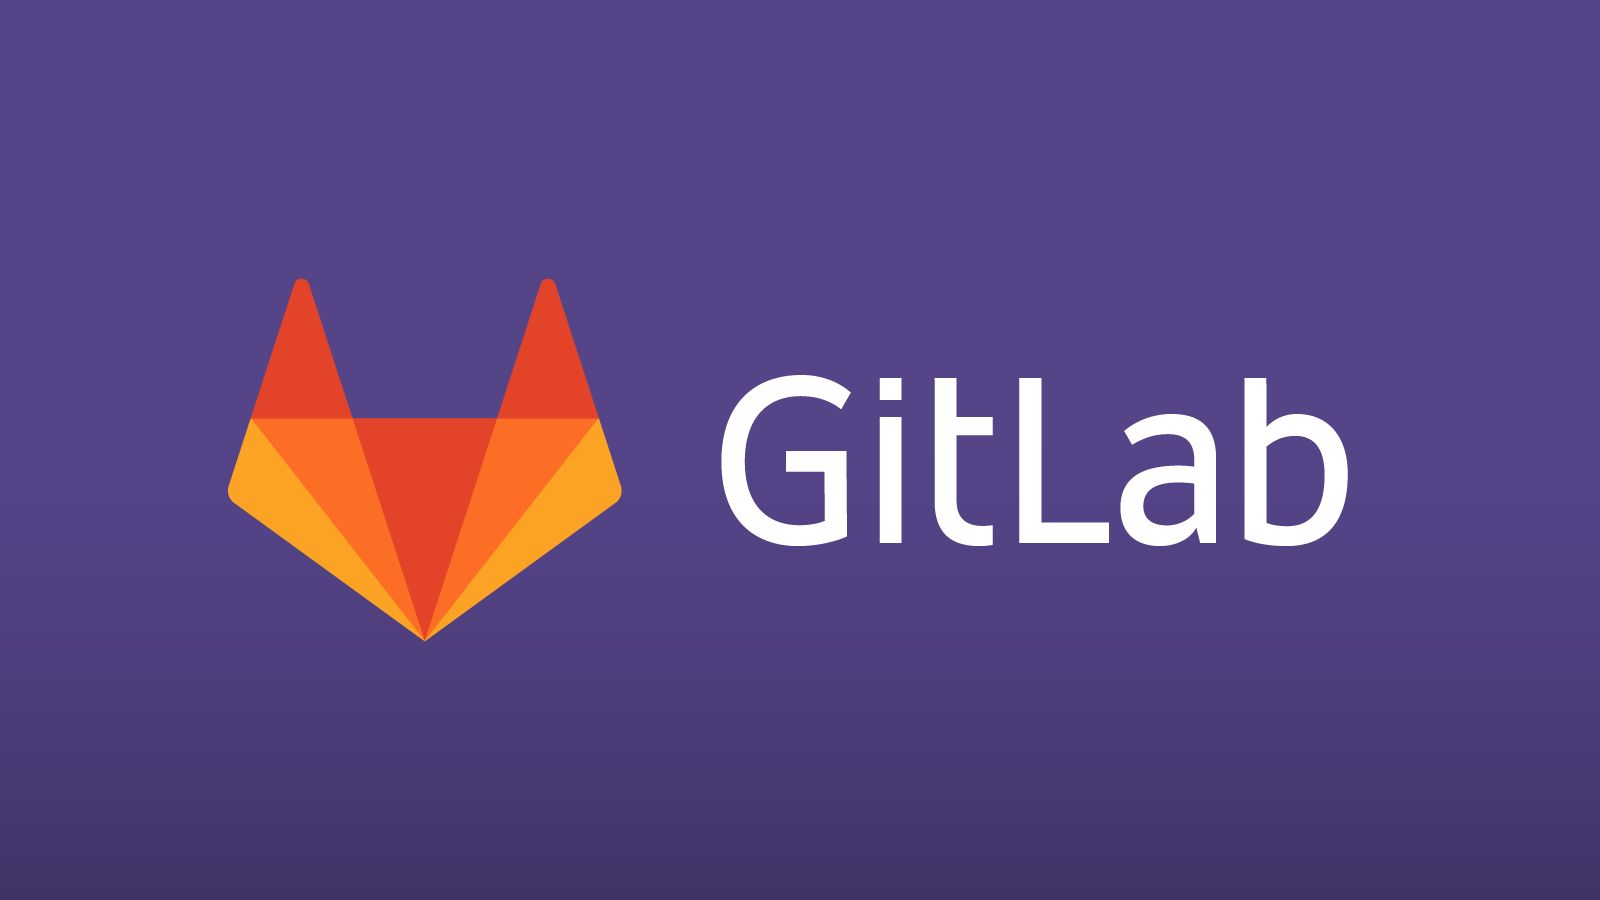 gitlab-logo.png